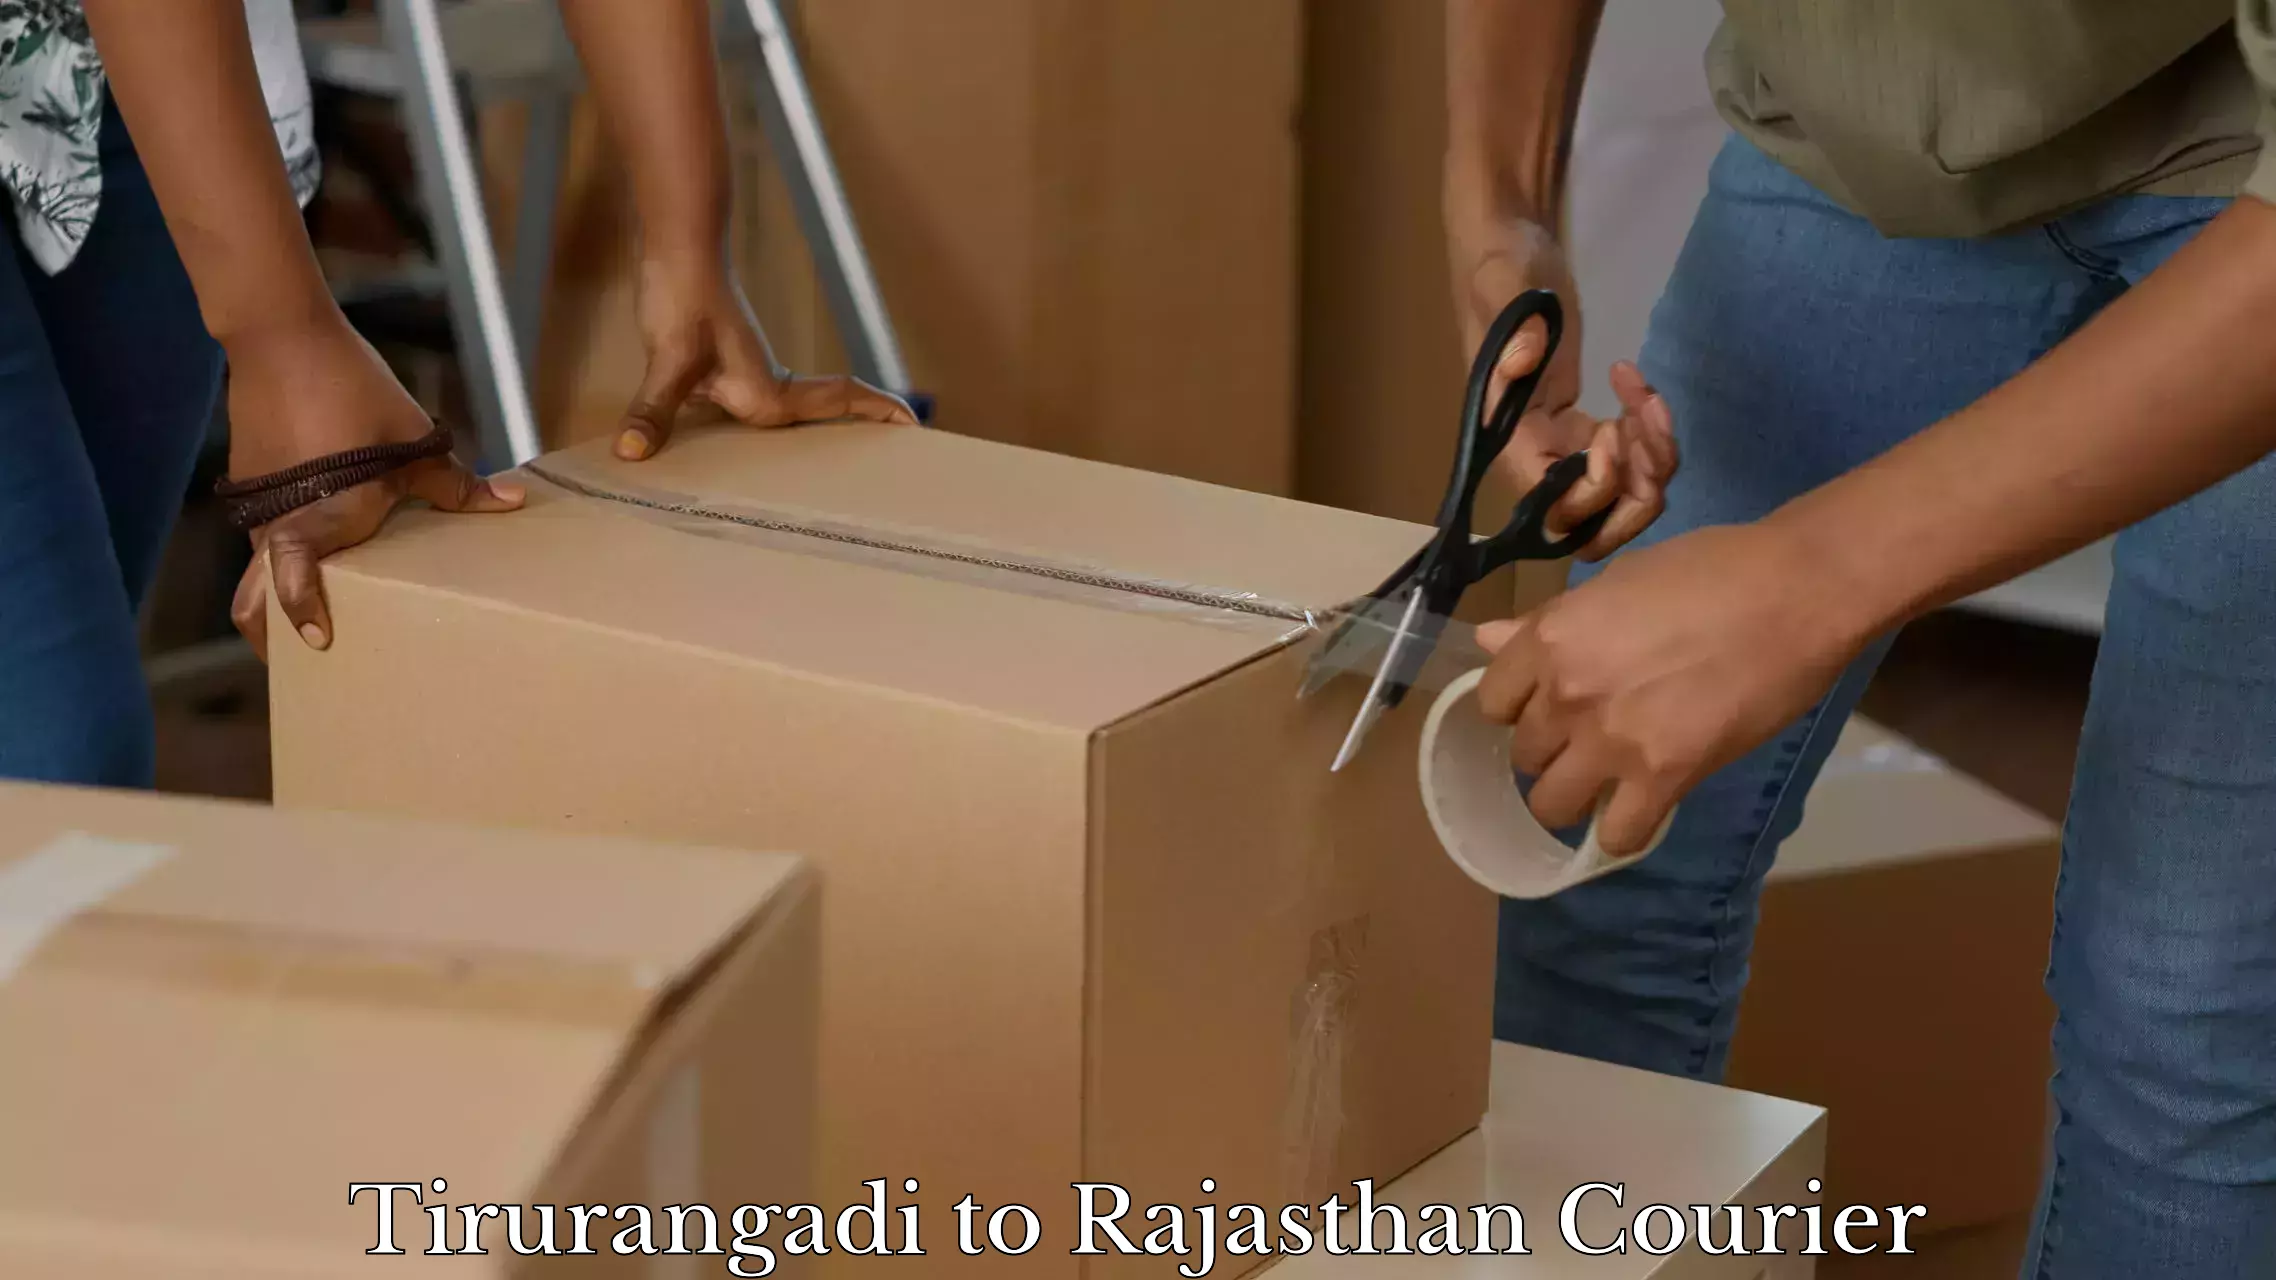 Baggage delivery management Tirurangadi to Rajasthan